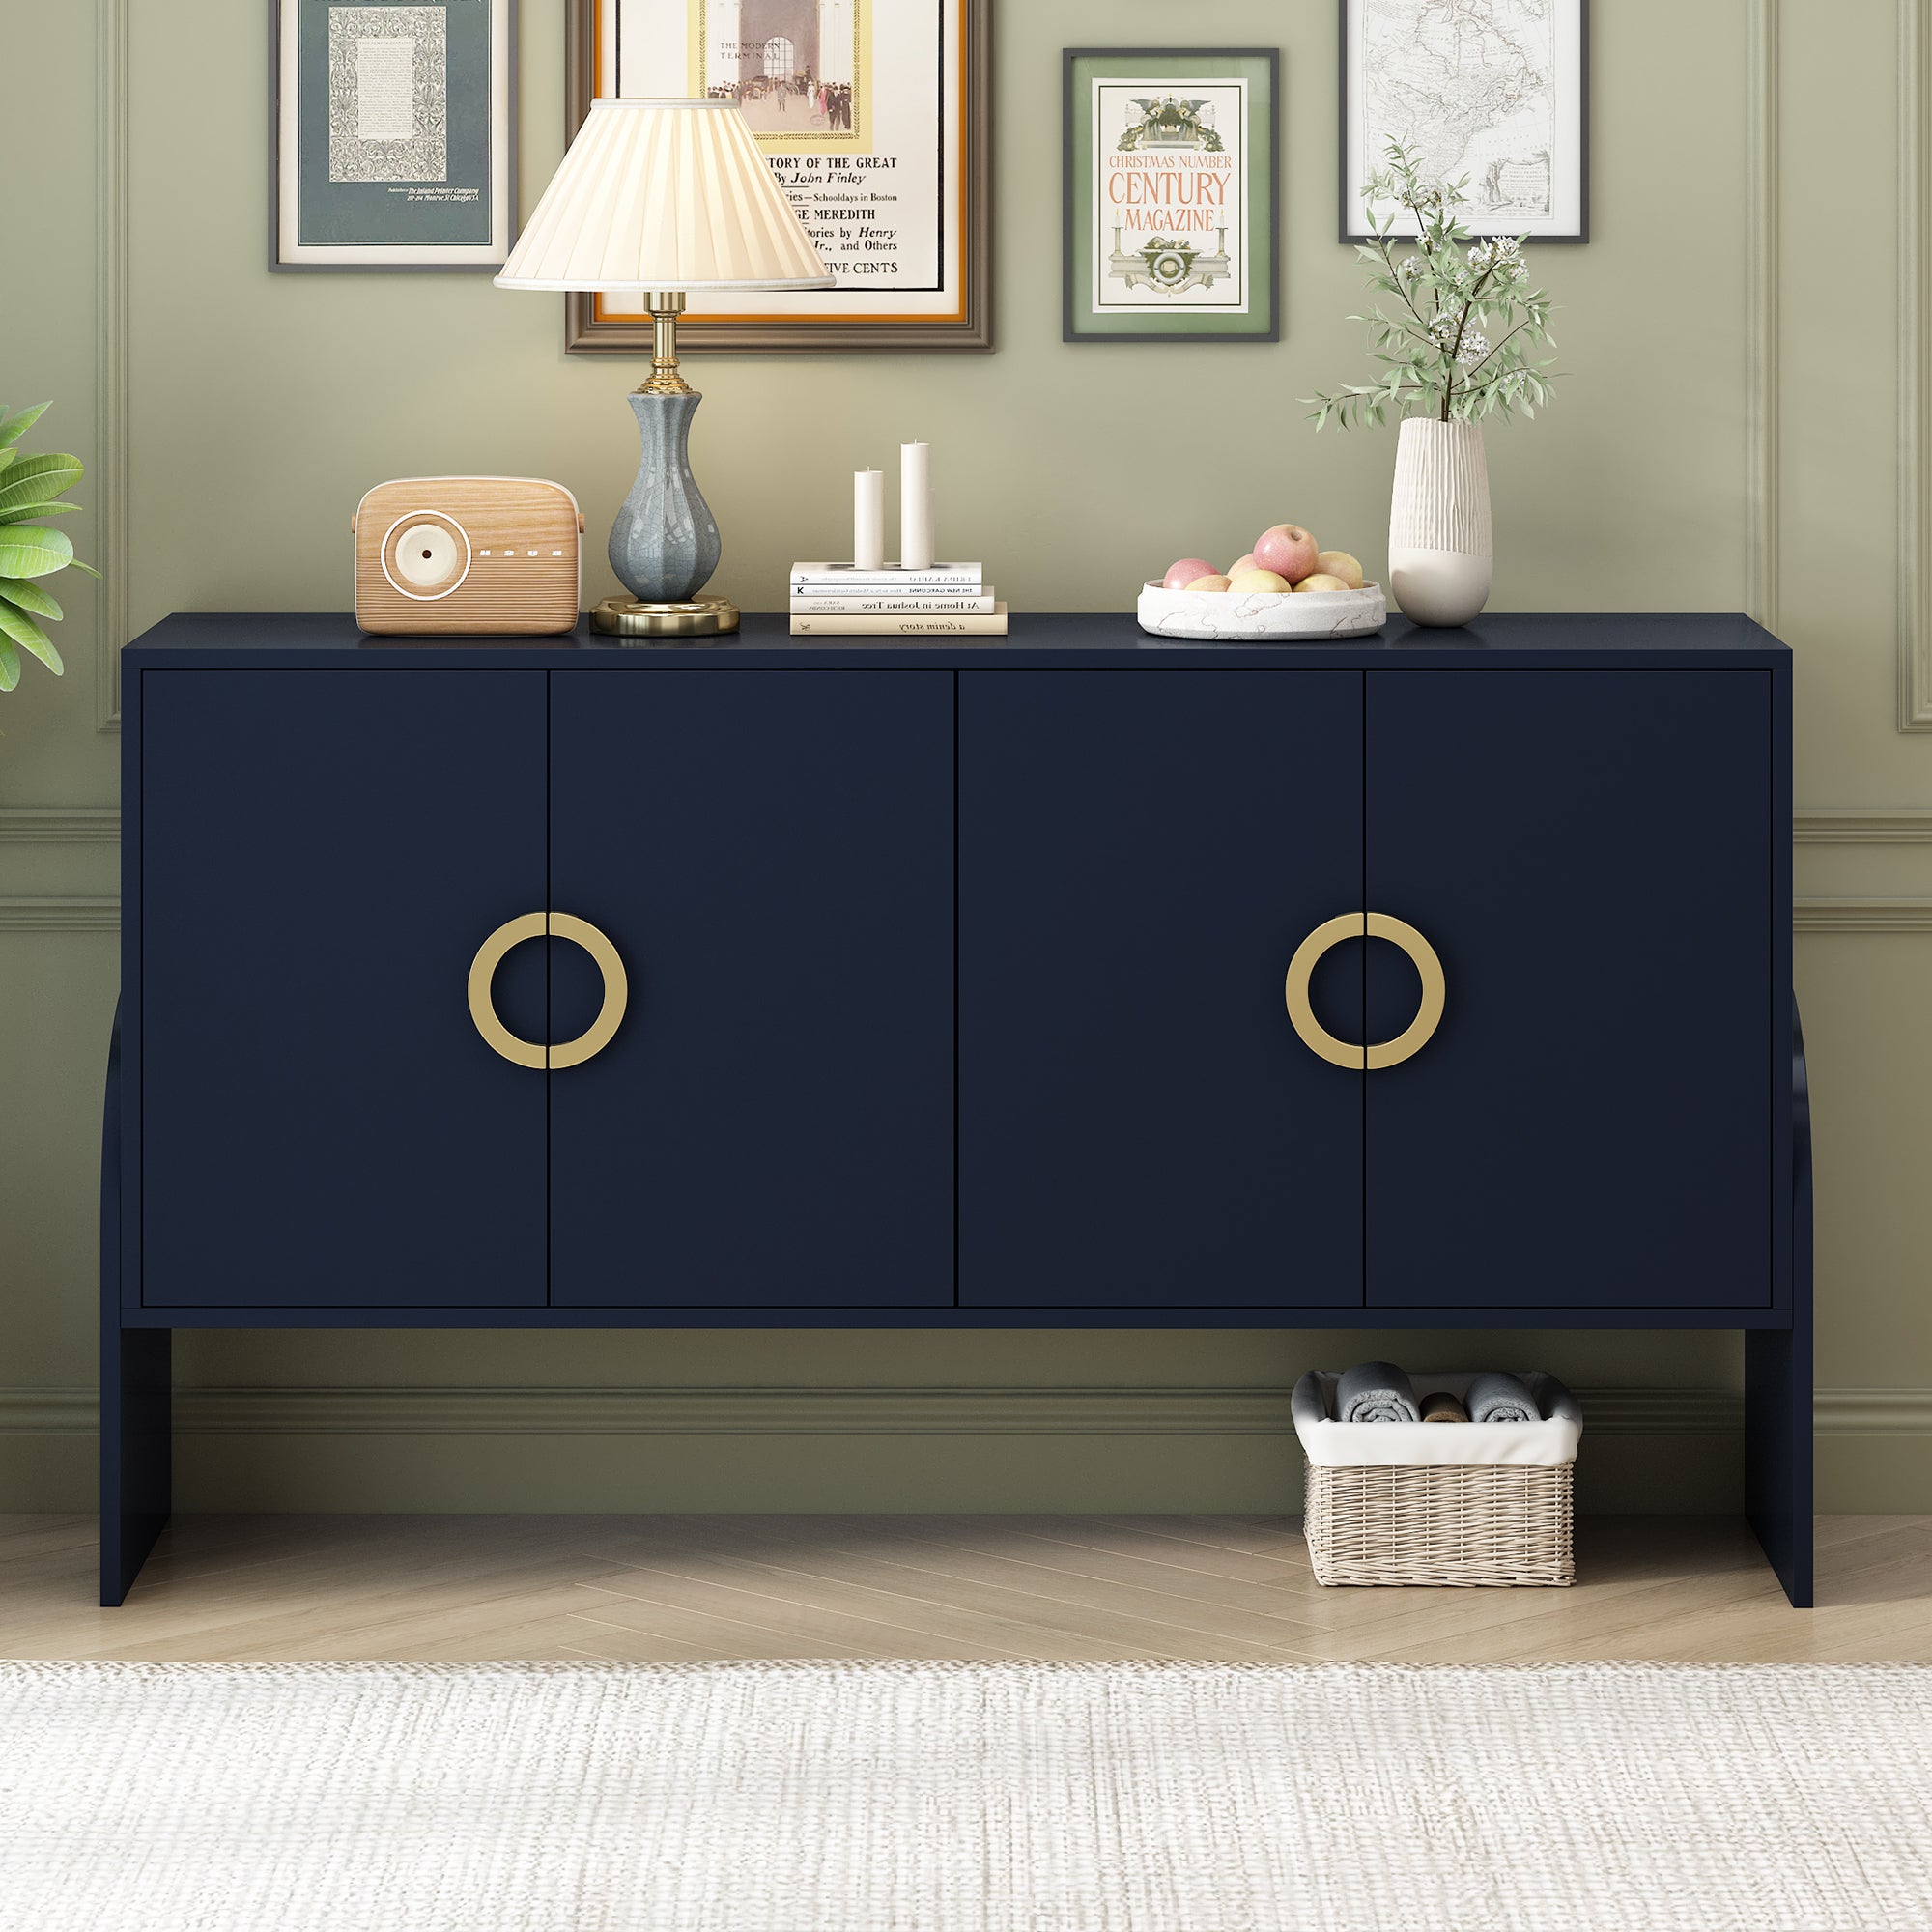 🆓🚛 4-Door Storage Cabinet, Metal Handle, Suitable for Study, Living Room, Bedroom, Navy Blue